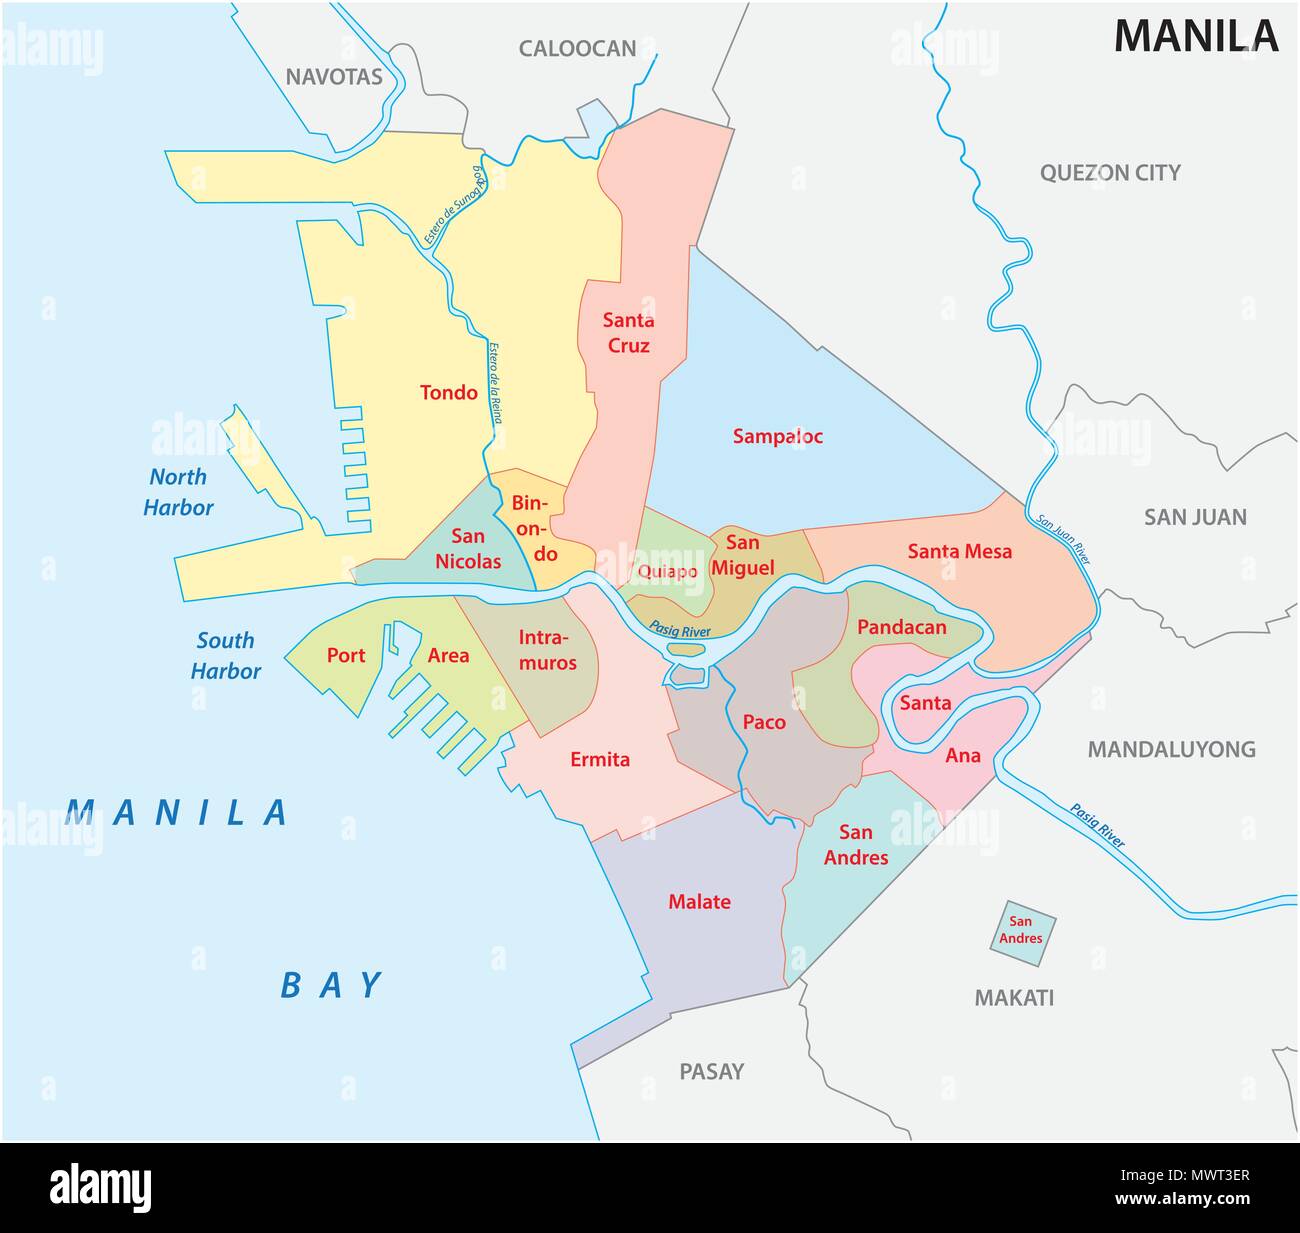 Manila politica e amministrativa di mappa vettoriale, Filippine Illustrazione Vettoriale